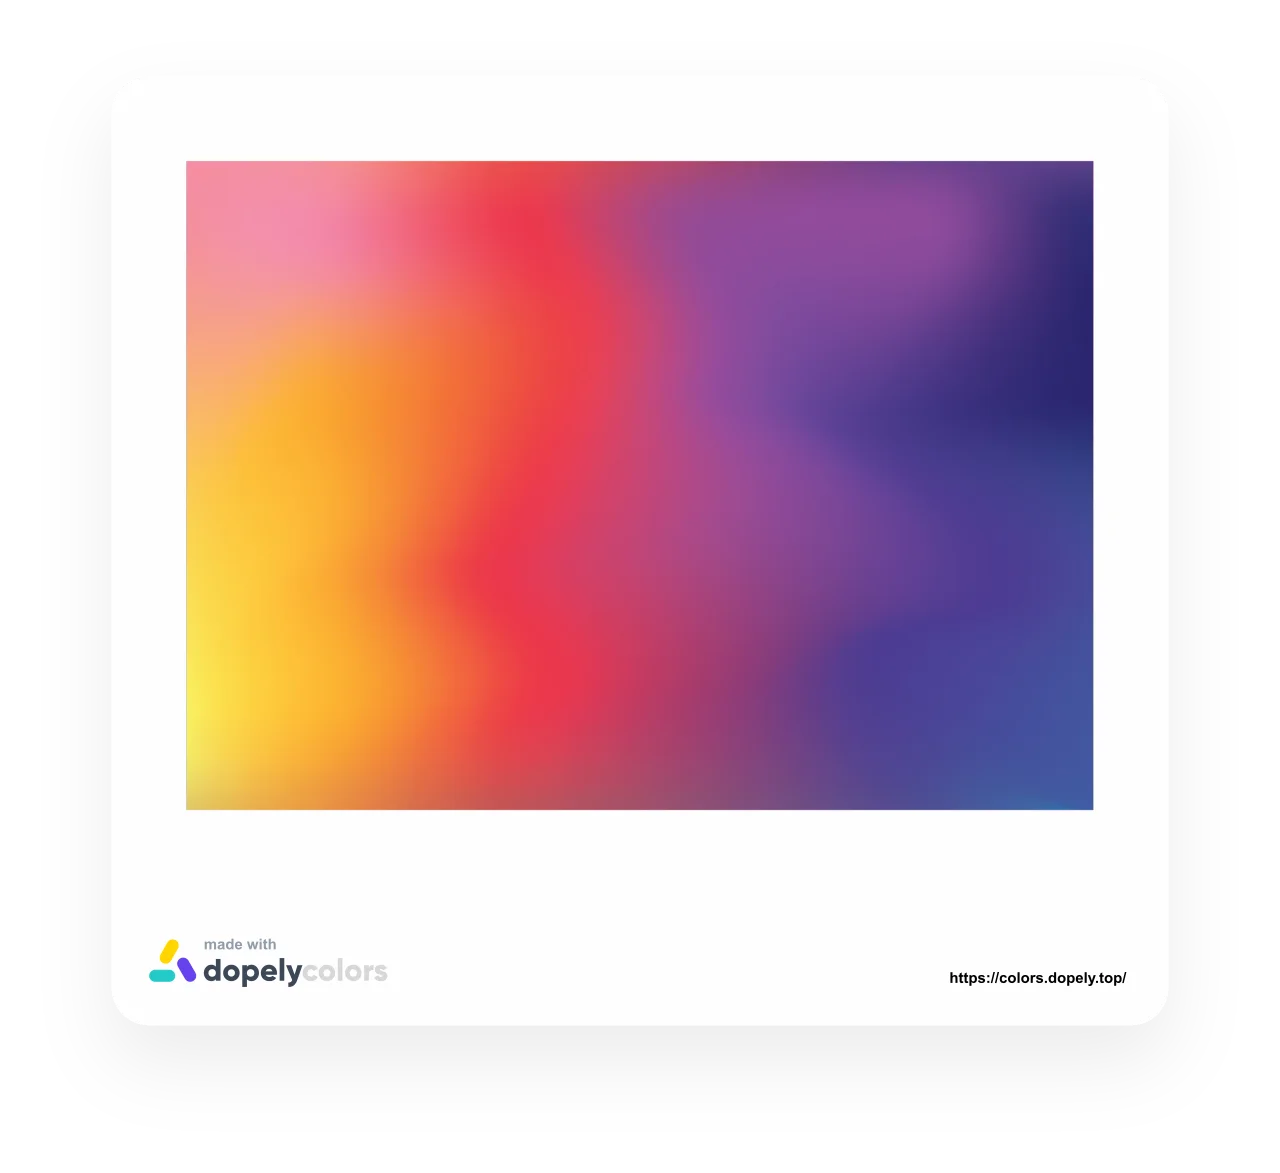 Hãy tạo ra sự pha trộn màu sắc tuyệt đẹp cho trang web của bạn với Color Gradient Generator. Bạn có thể tạo màu gradient độc đáo và riêng biệt cho trang của mình. Hãy xem hình ảnh liên quan đến Color Gradient Generator để biết thêm chi tiết.